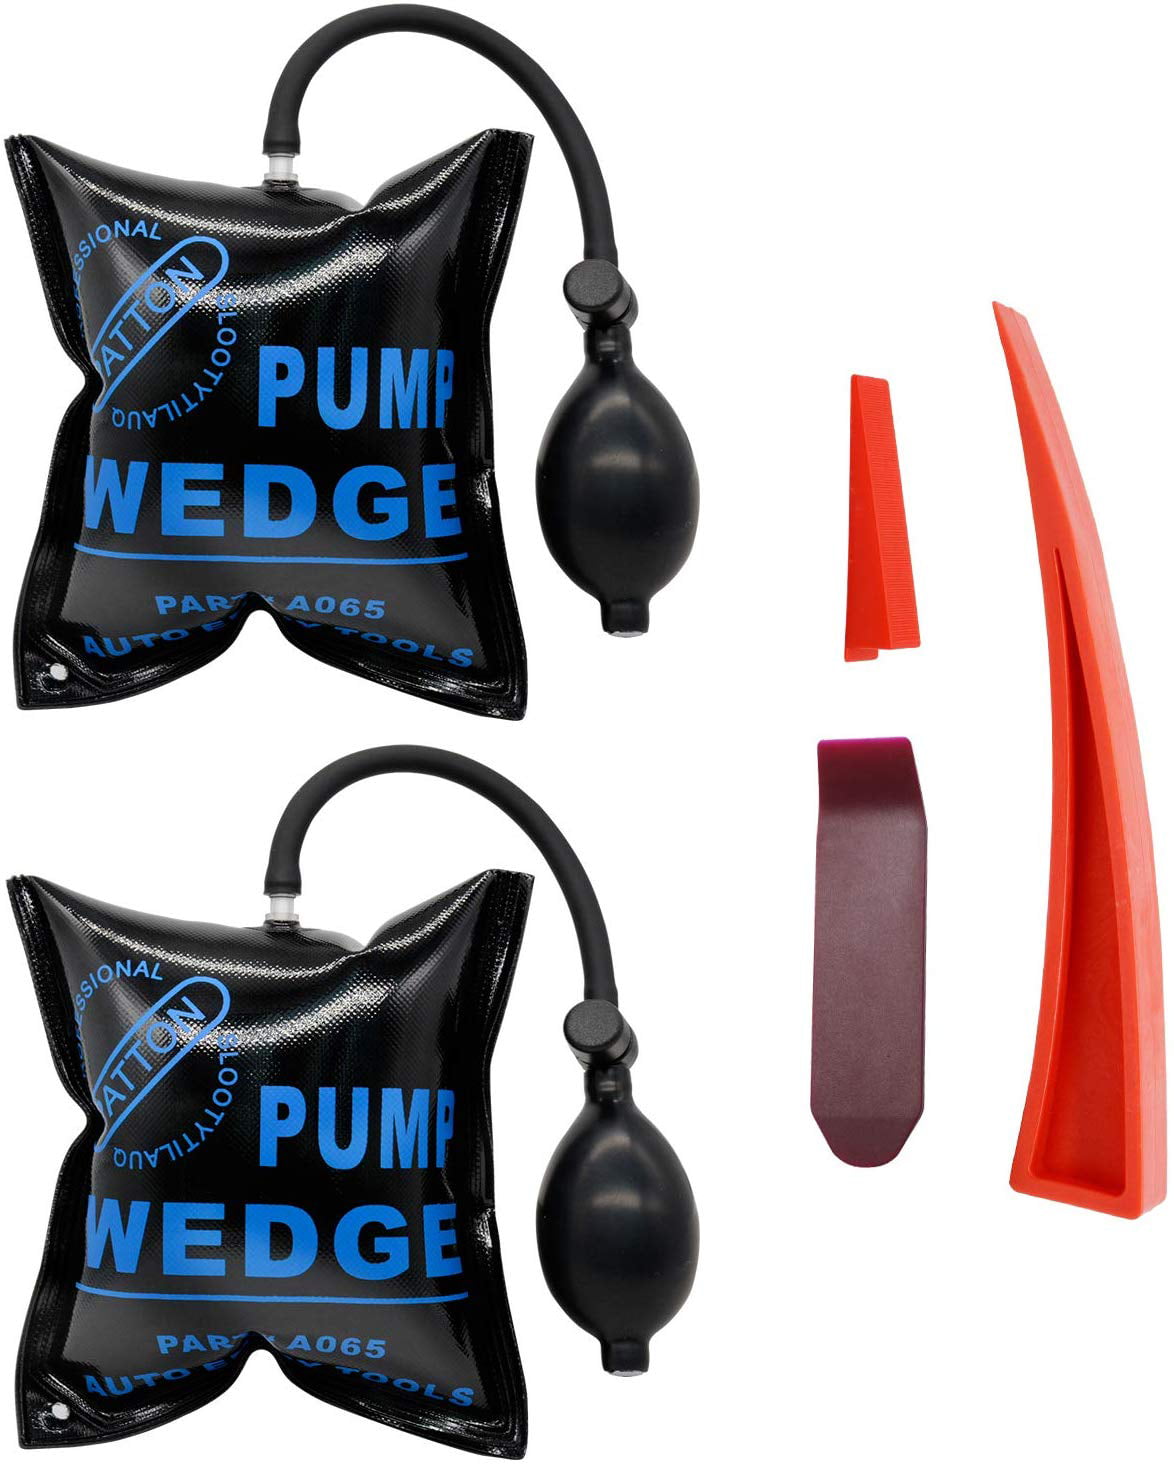 2x Air Pump Wedge Tools Inflatable Bags Car Door Window Open Air Bag Pump Wedges 